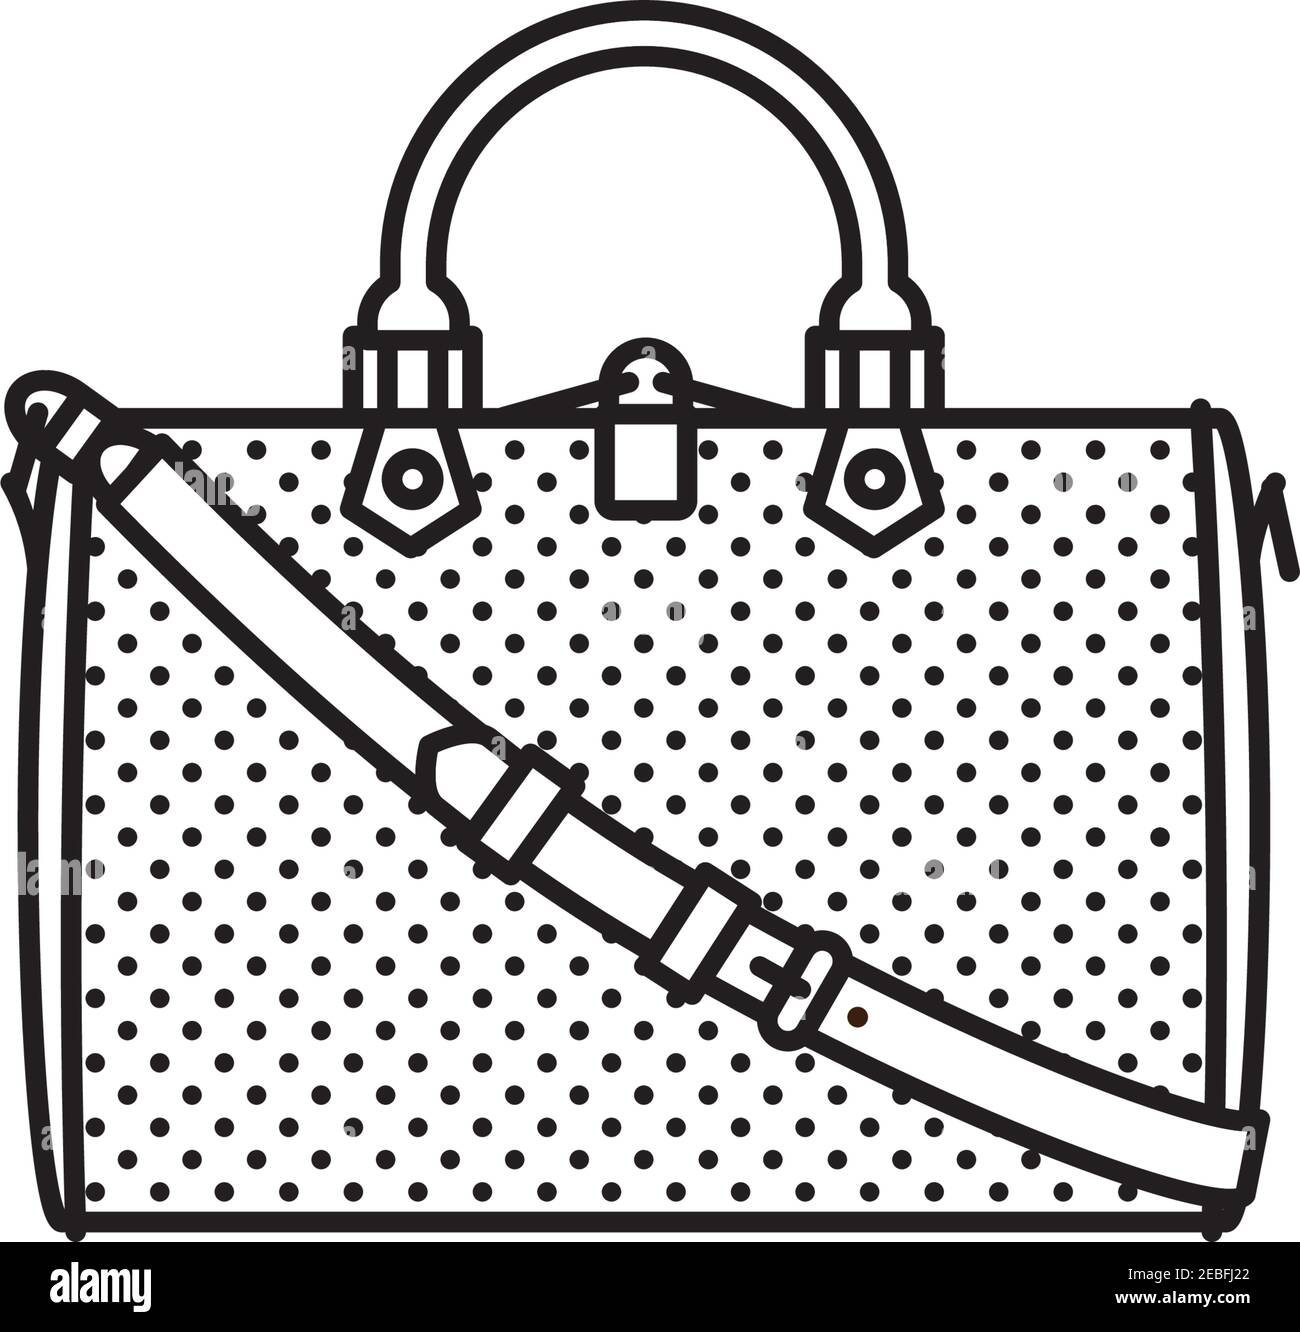 Iconic Mode Designer Handtasche Vektor Linie Symbol für Handtasche Tag Am 10. Oktober Stock Vektor